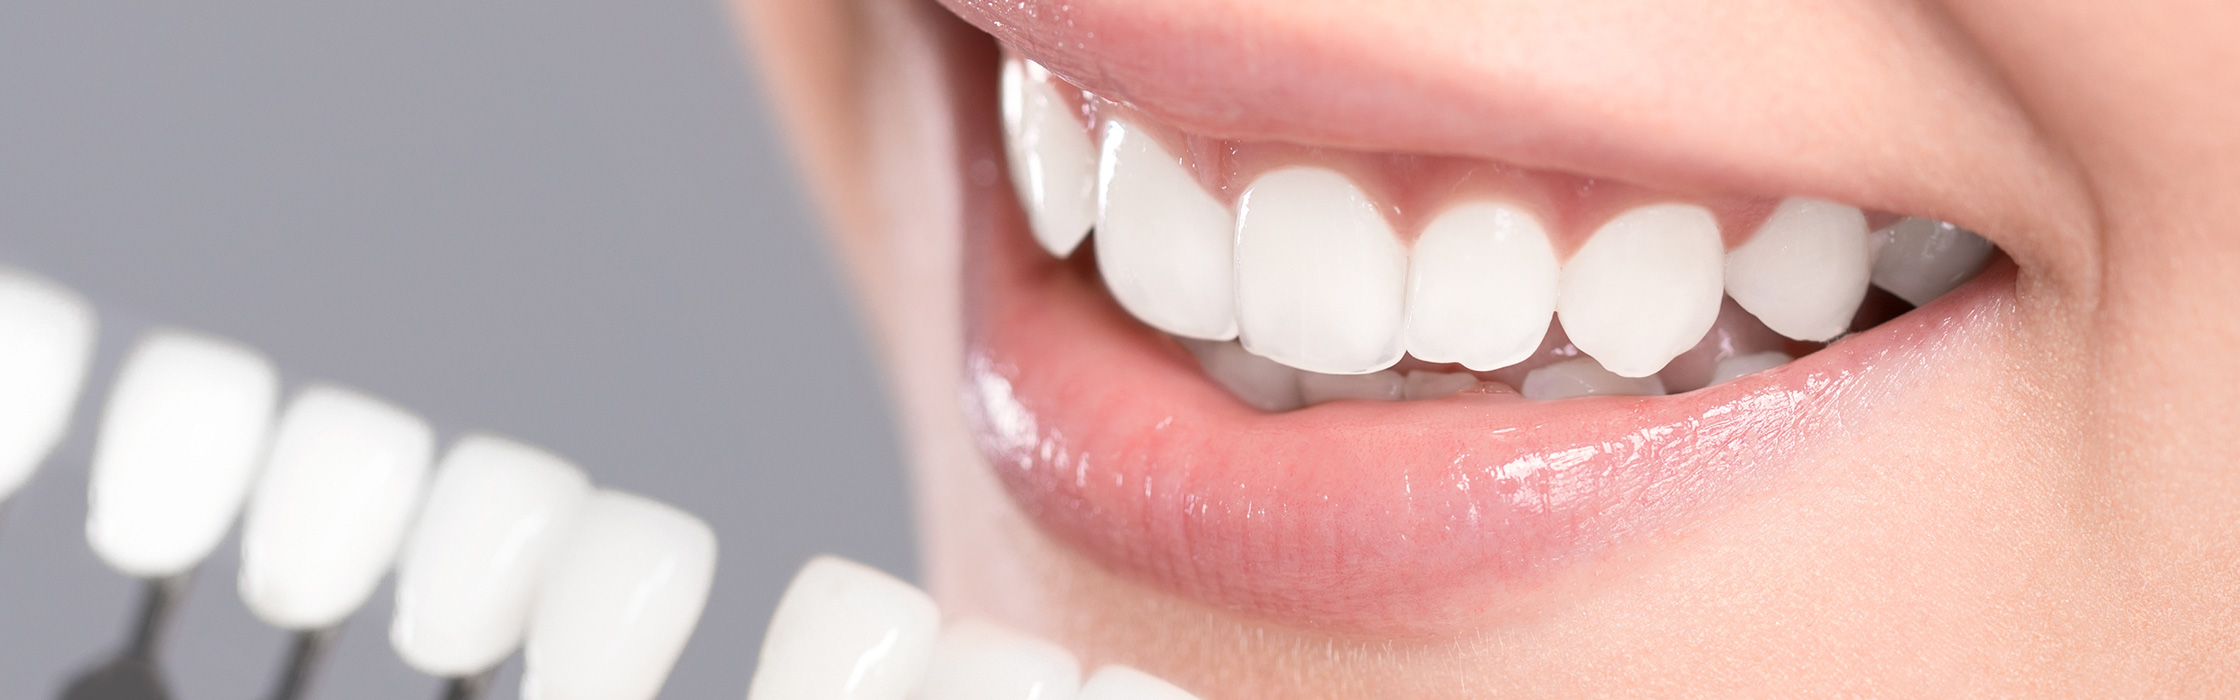 Zahnästhetik: Behandlungen für ästhetische Zähne